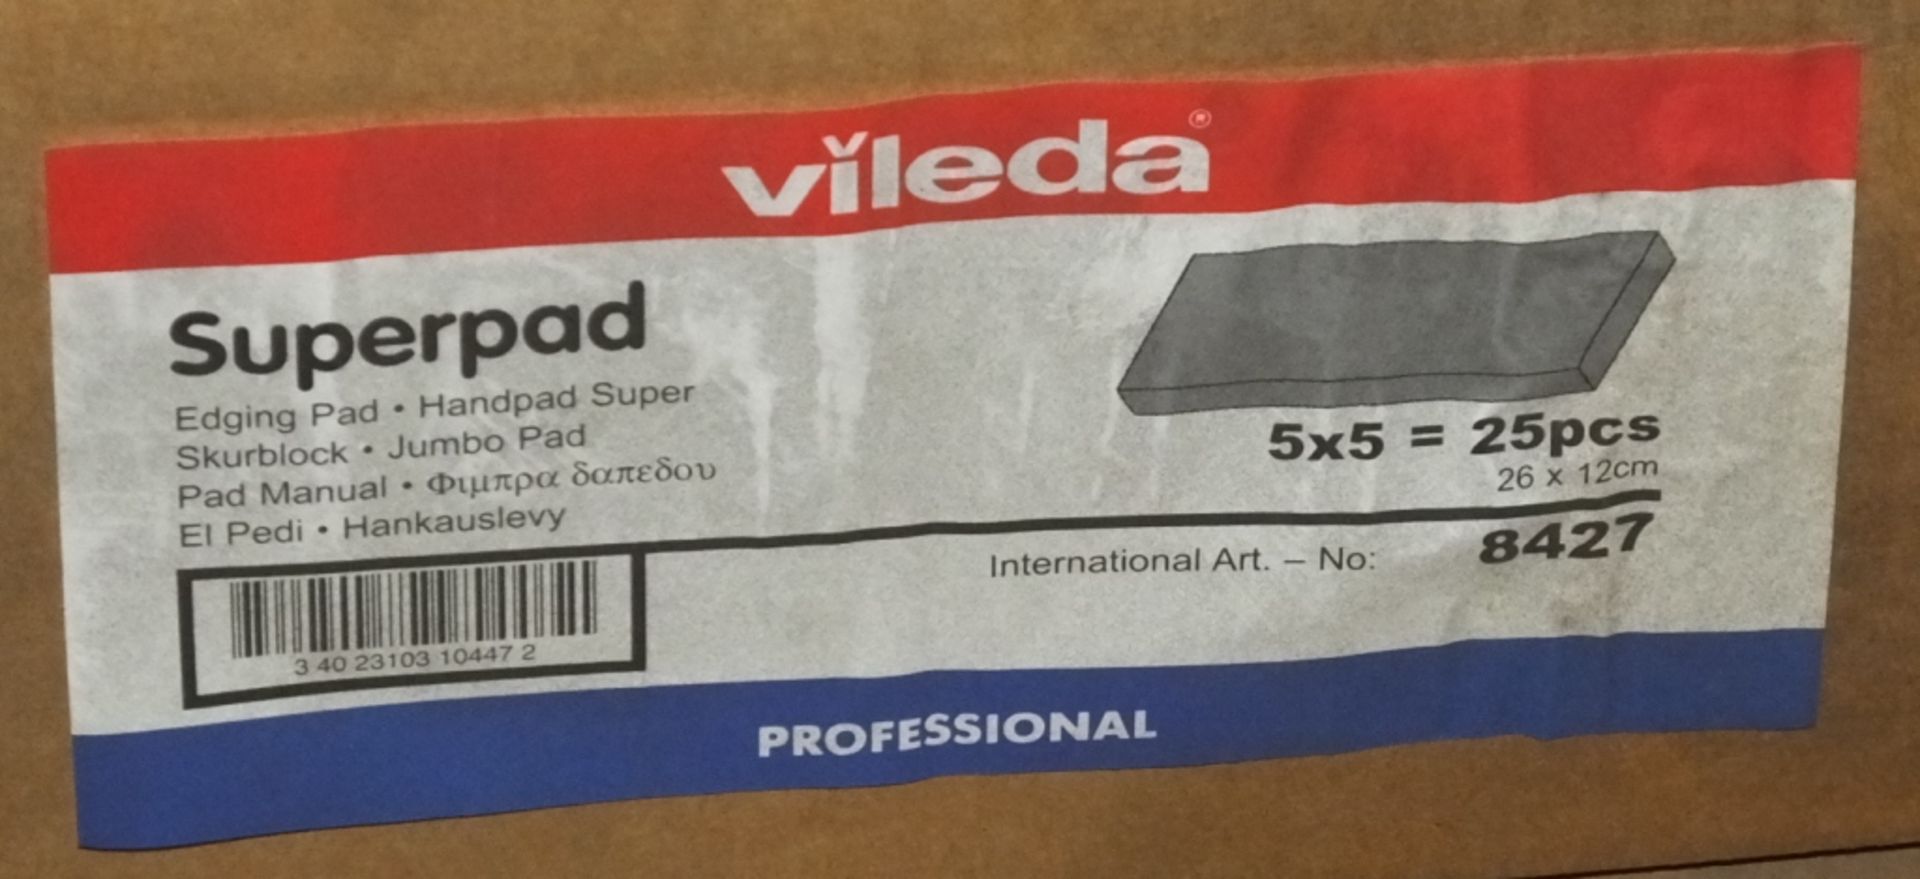 Vileda Superpads - edging pads - 5 per pack - 5 packs per box - 22 boxes - Image 2 of 2